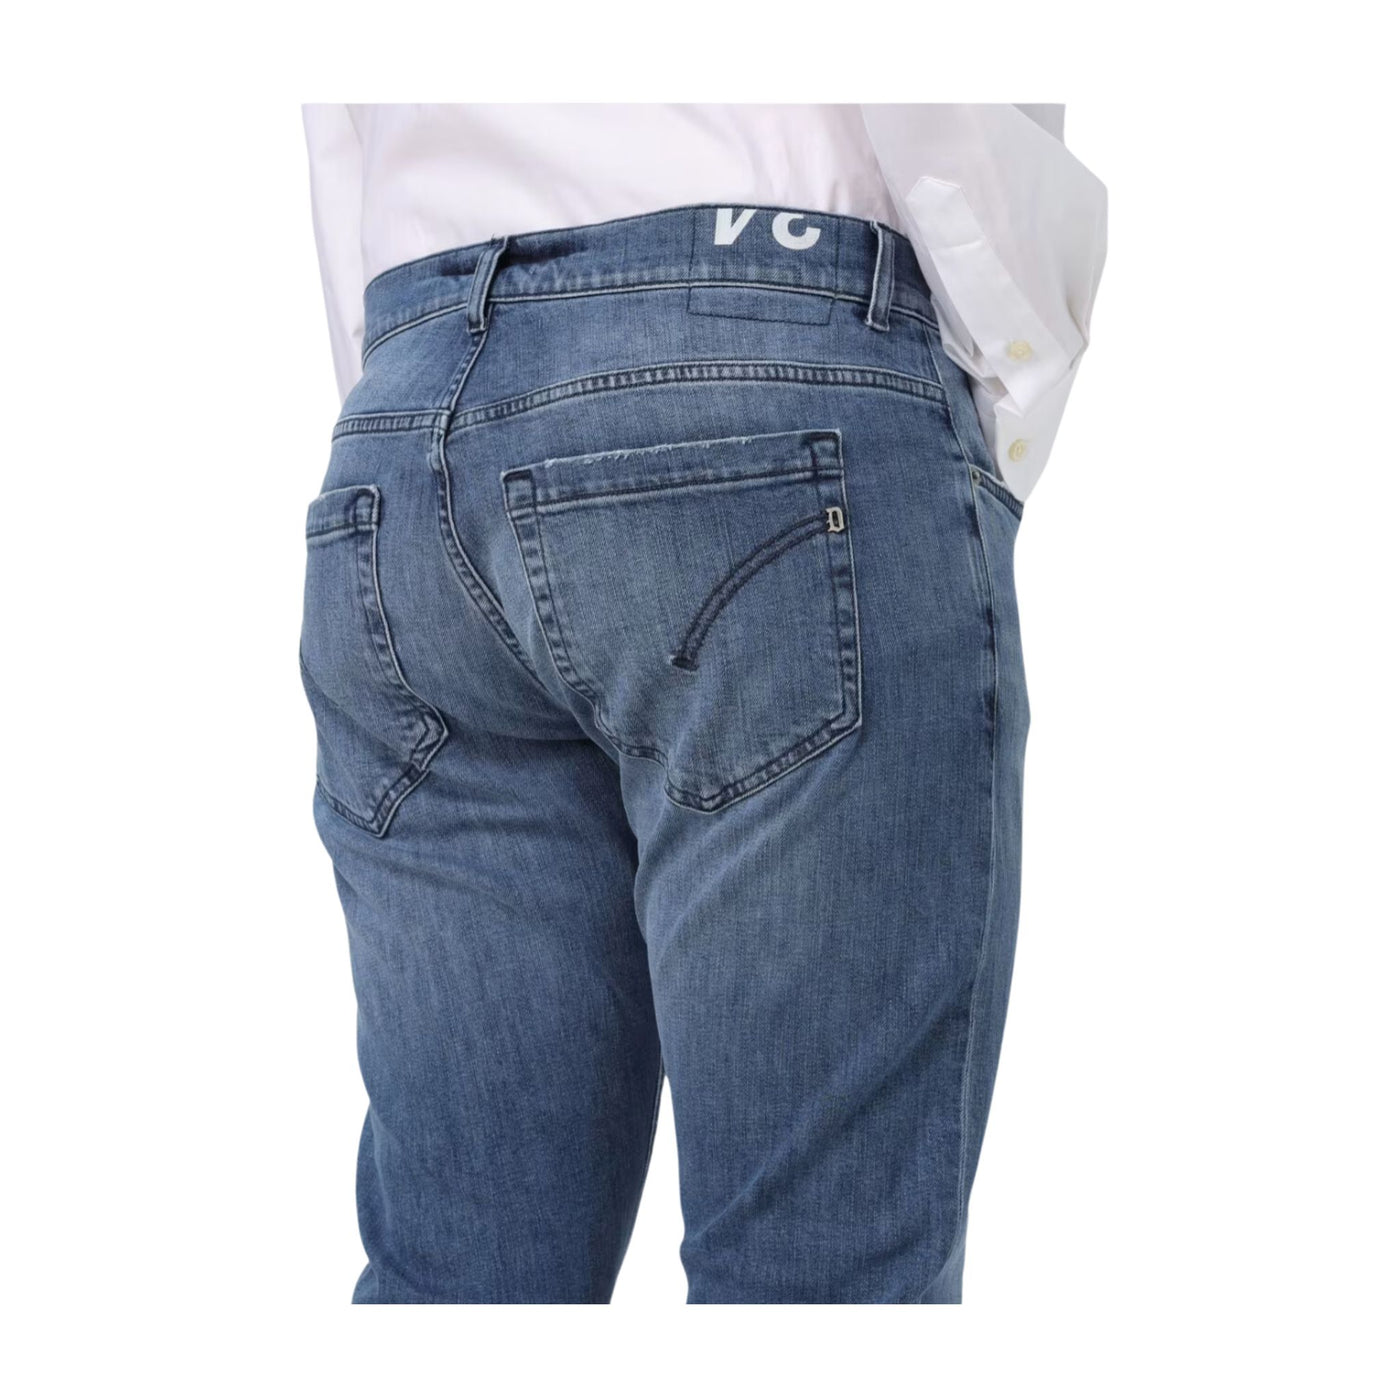 Medium wash men's jeans